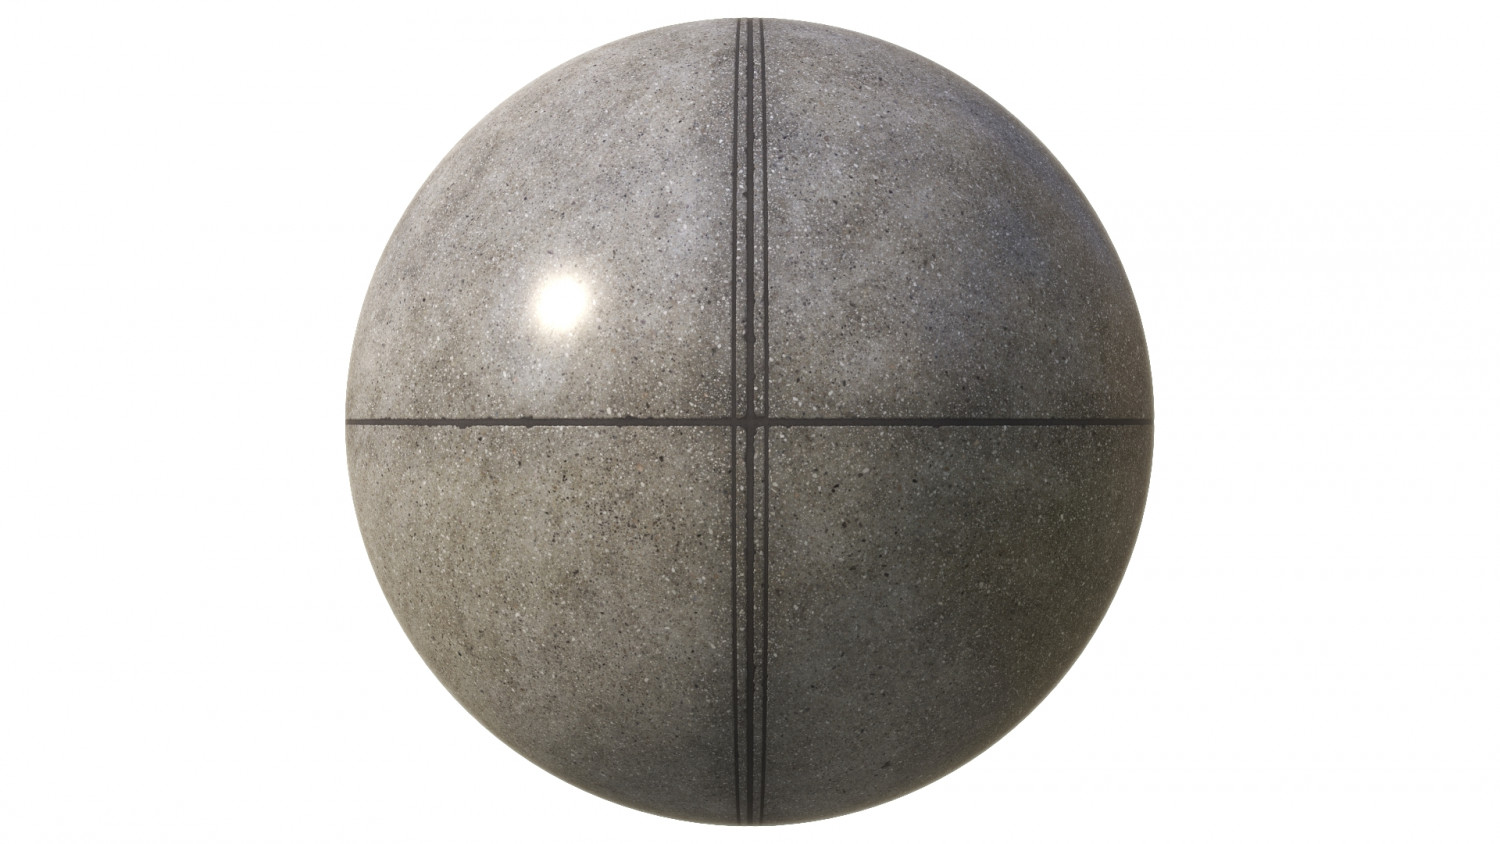 Polished concrete floor texture